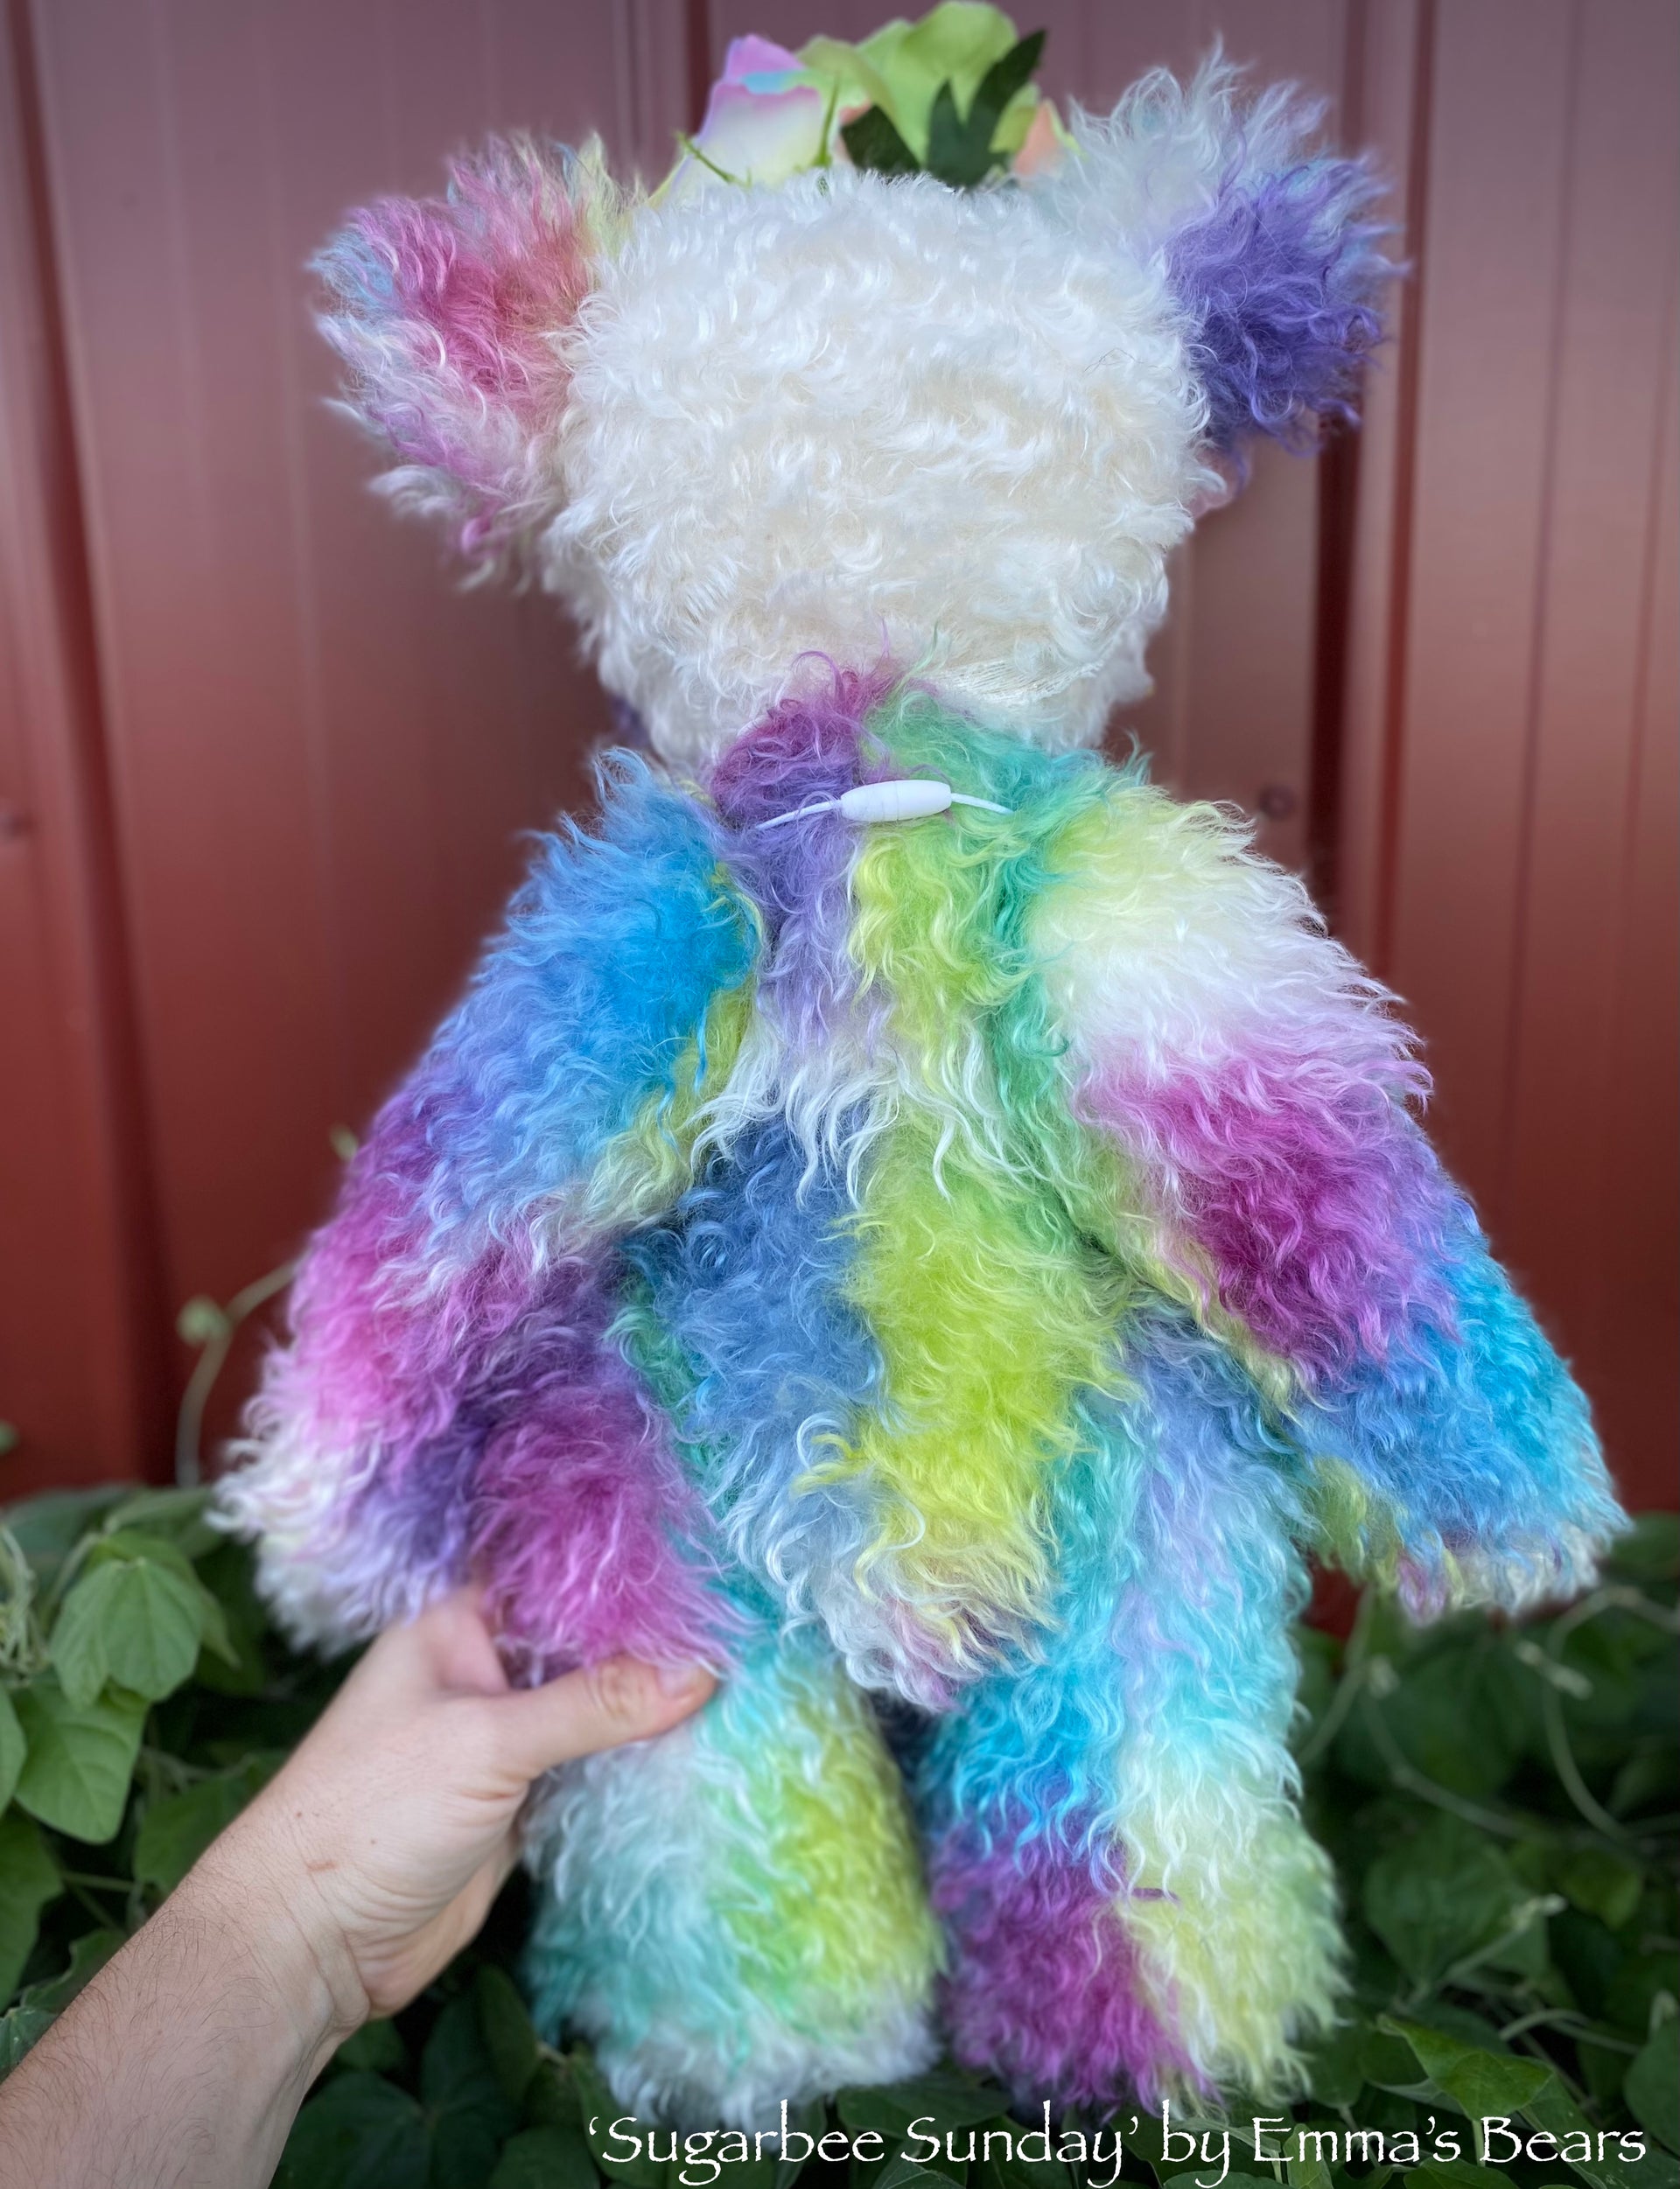 Sugarbee Sunday - 20" Hand-Dyed Rainbow mohair Artist Bear by Emma's Bears - OOAK